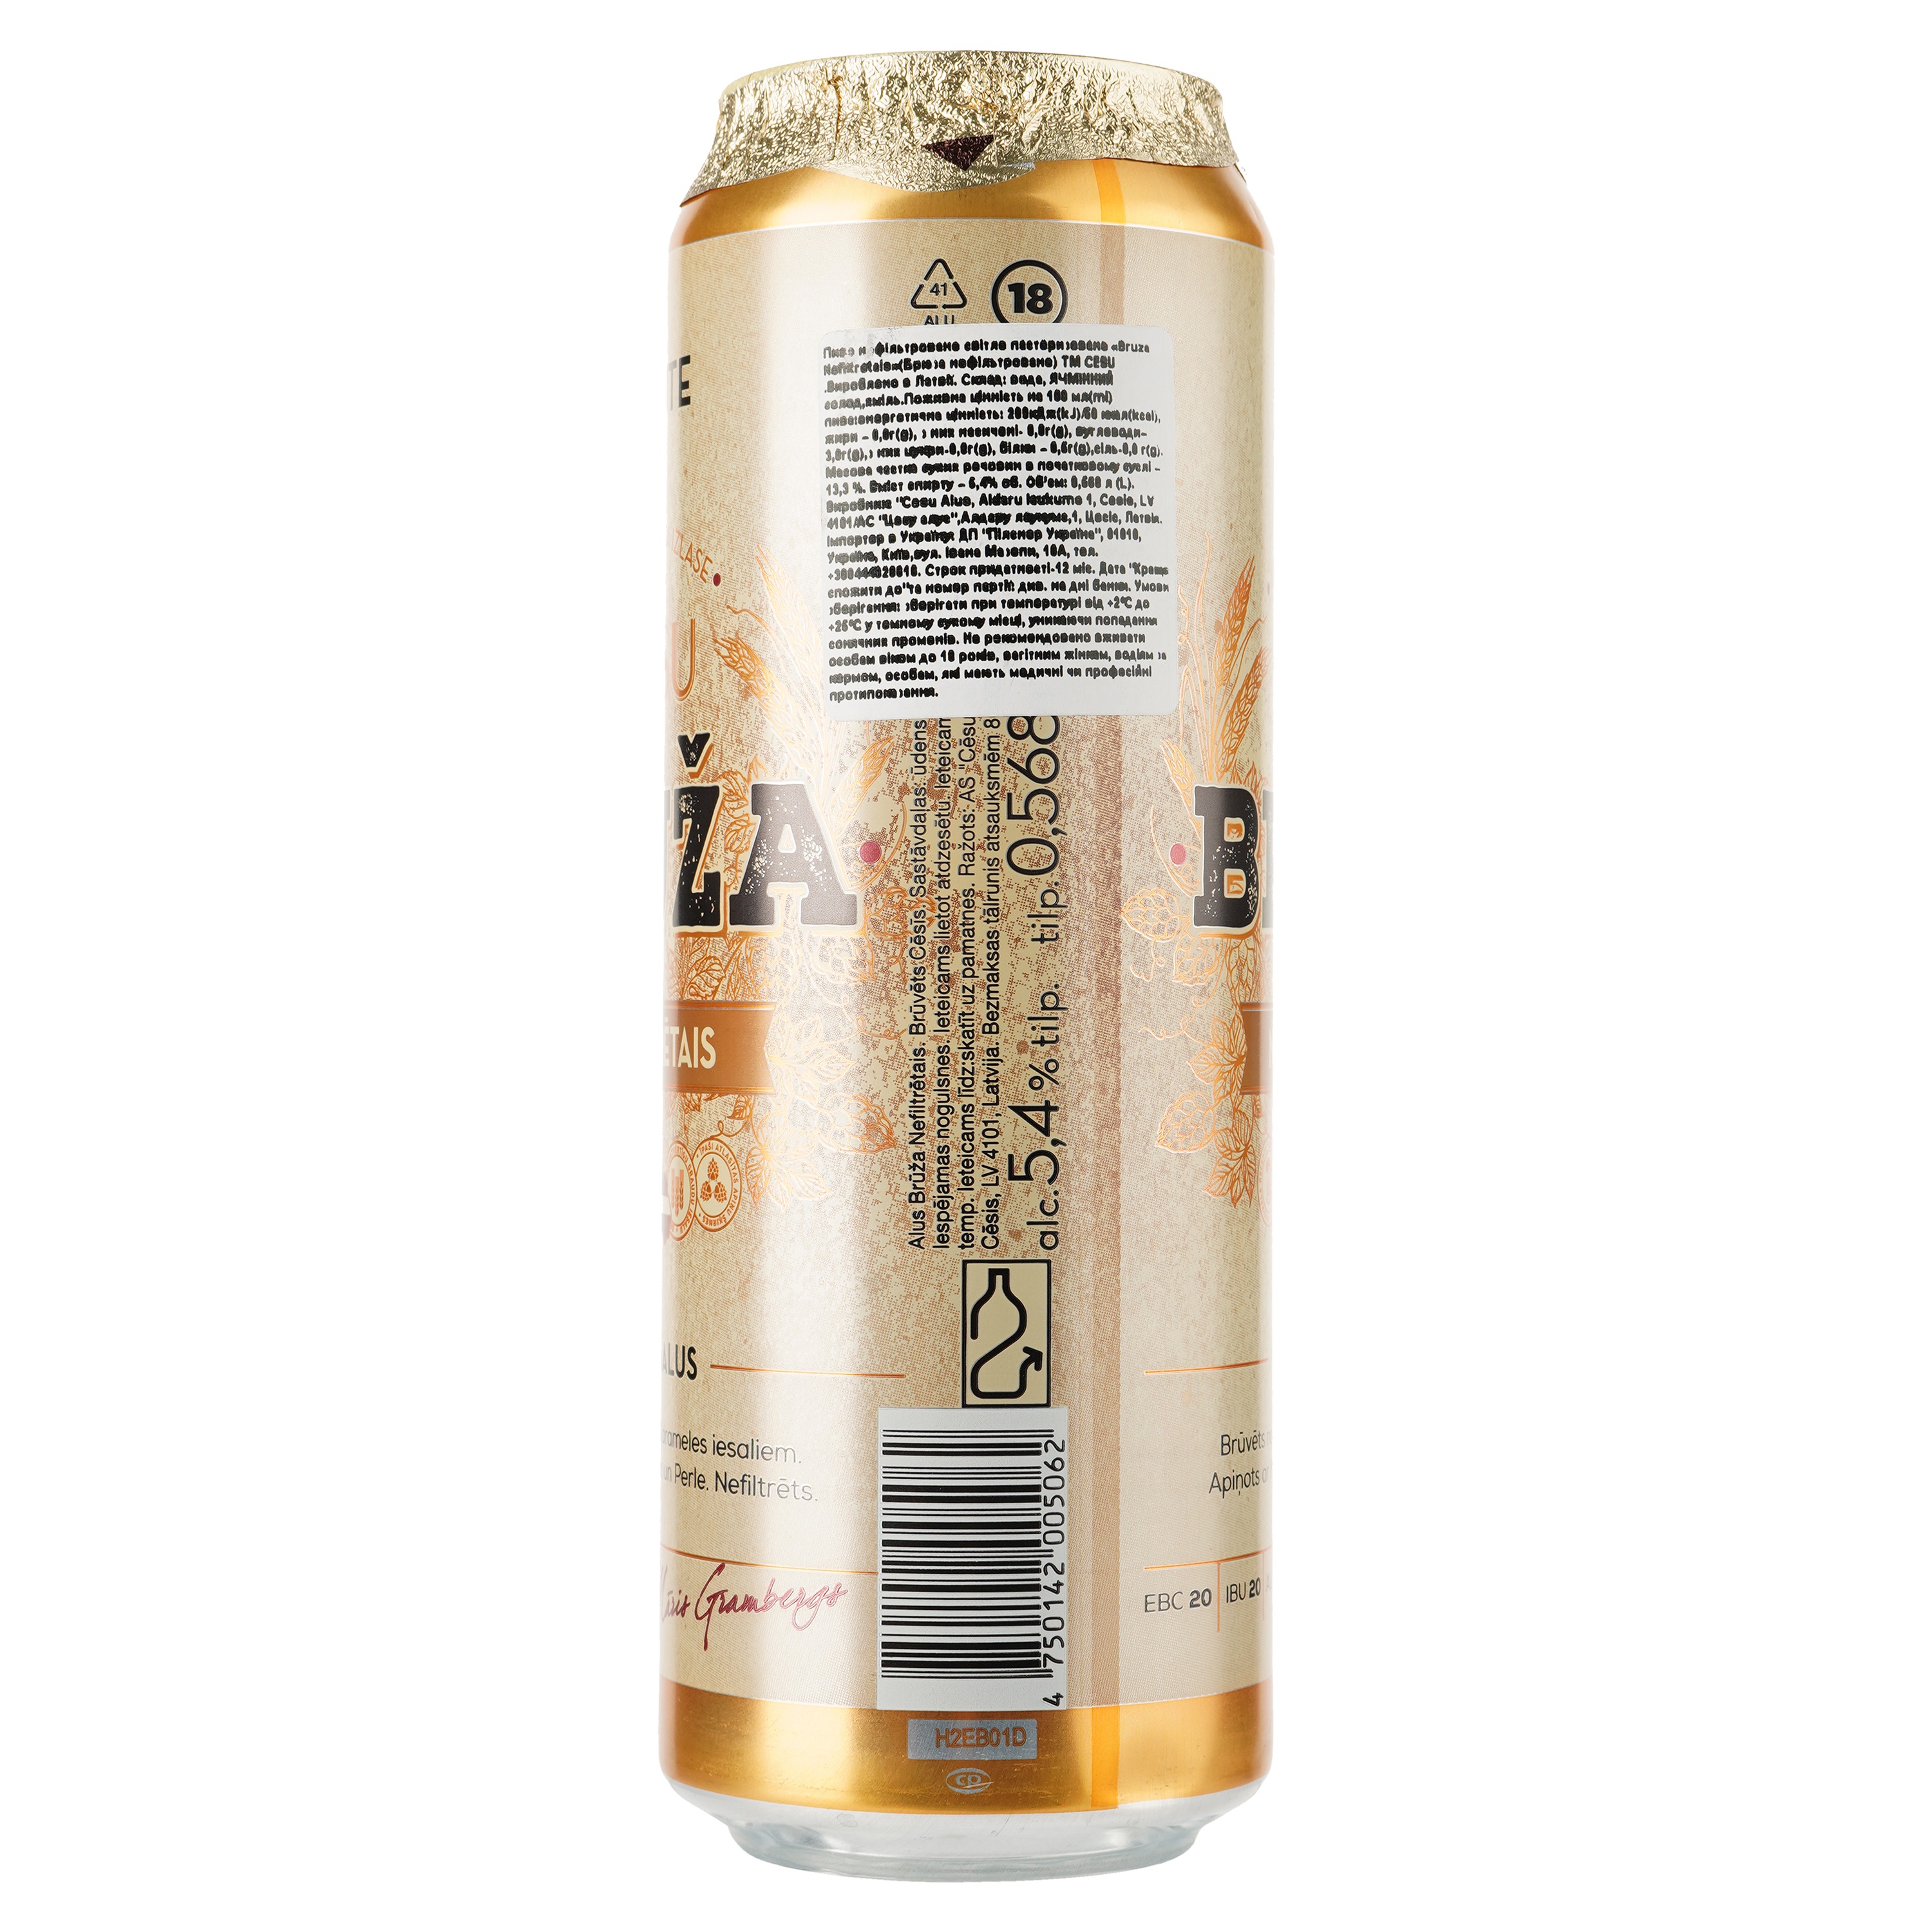 Пиво Cesu Bruza Nefiltretais, светлое, нефильтрованное, 5,4%, ж/б, 0,568 л - фото 2